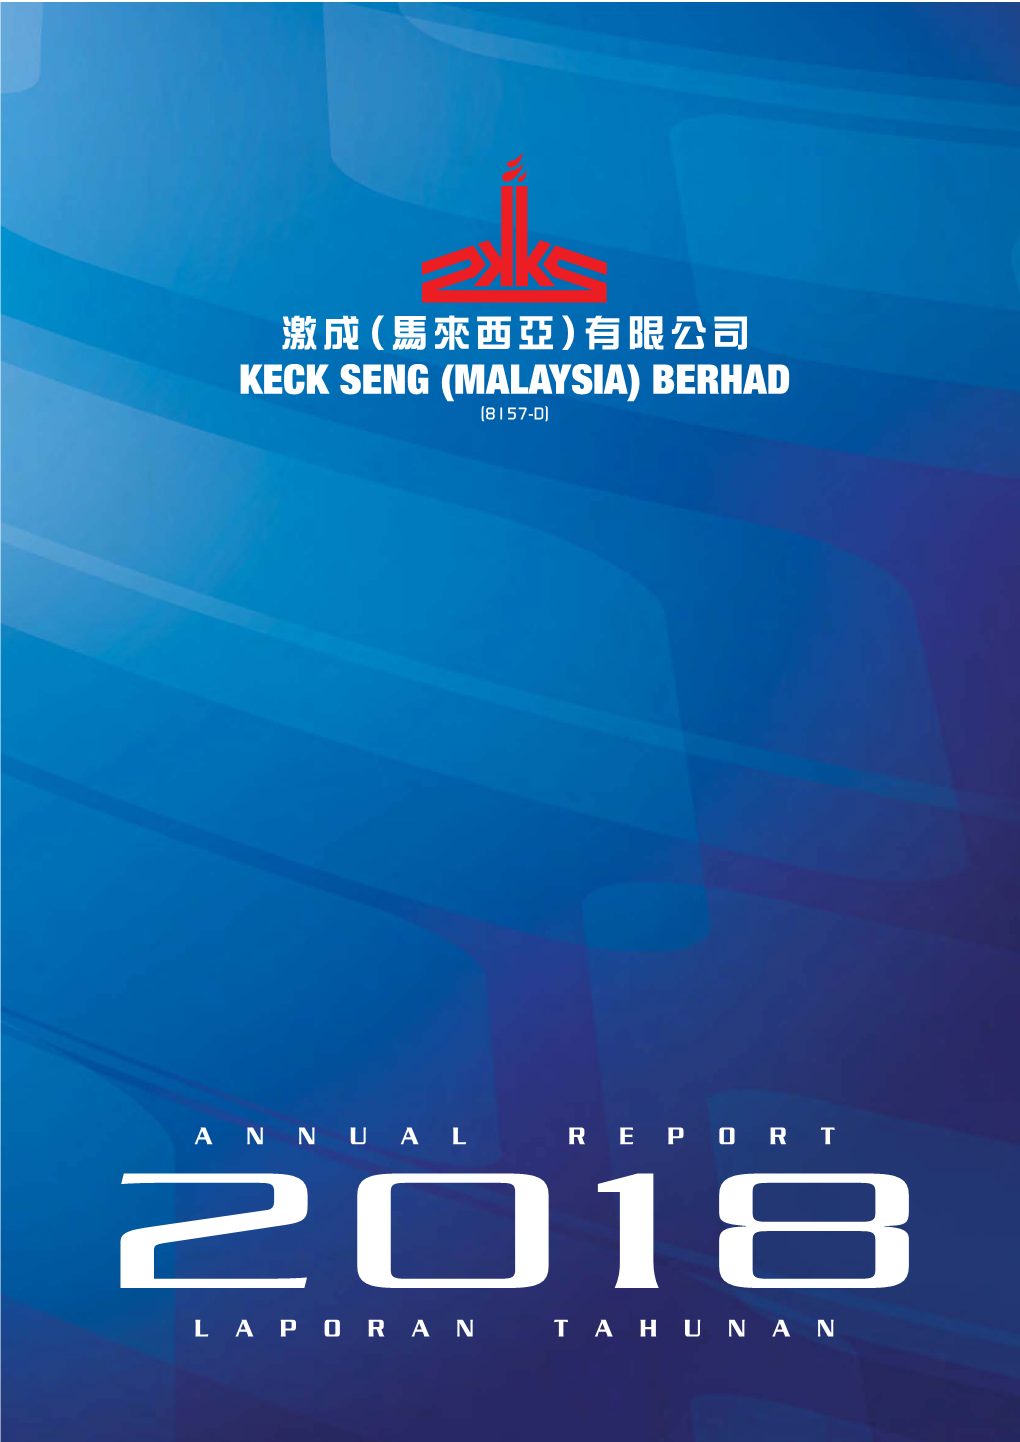 Keck Seng (Malaysia) Berhad (8157-D)